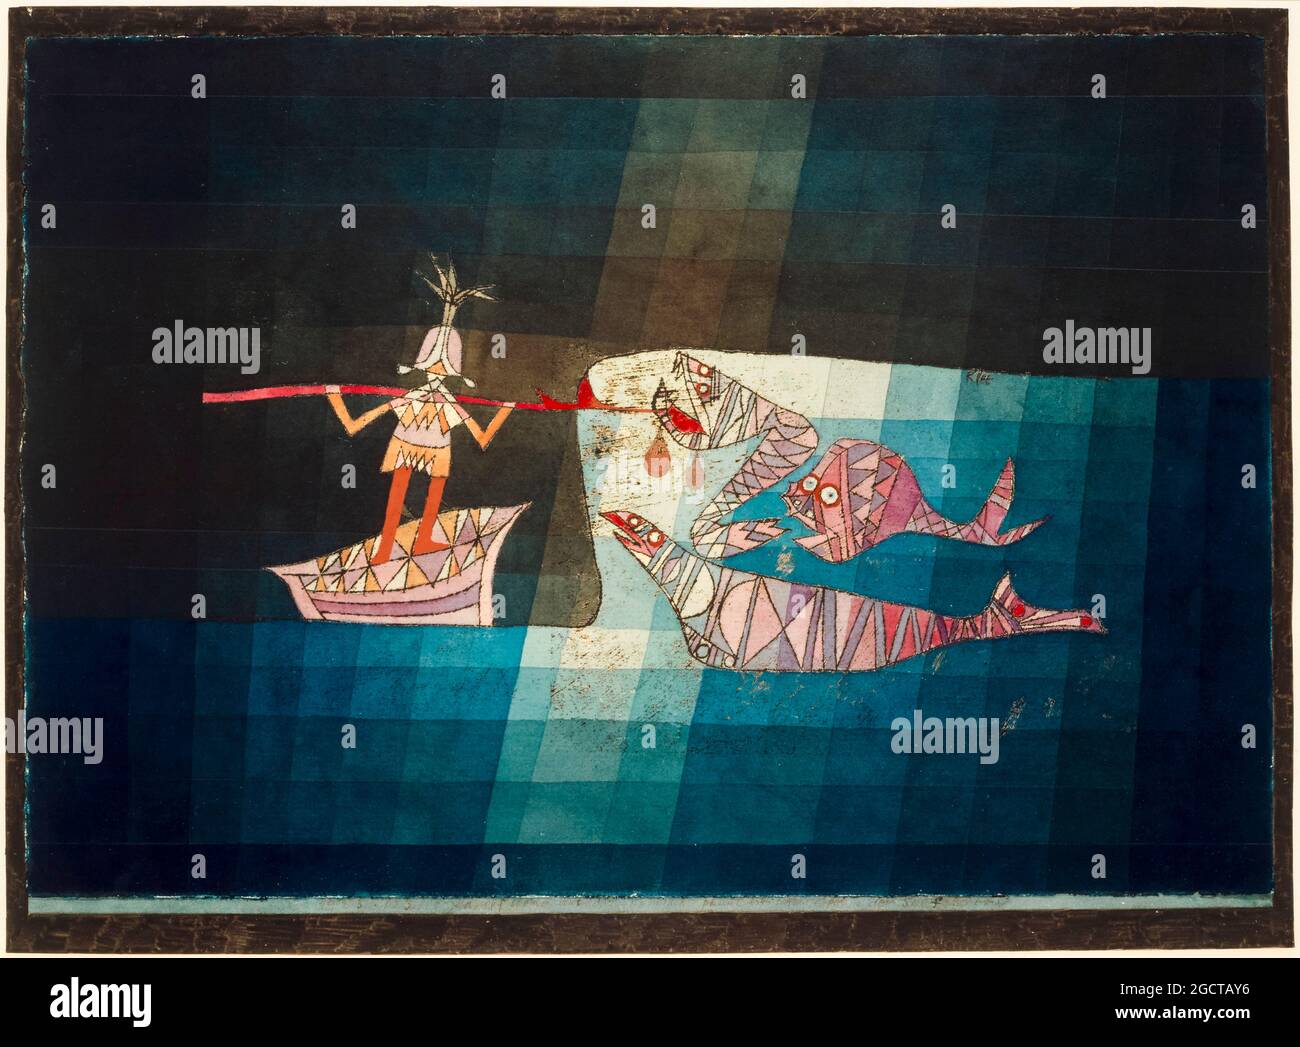 Paul Klee, escena de batalla de la divertida y fantástica ópera La gente de mar, pintura abstracta, 1923 Foto de stock